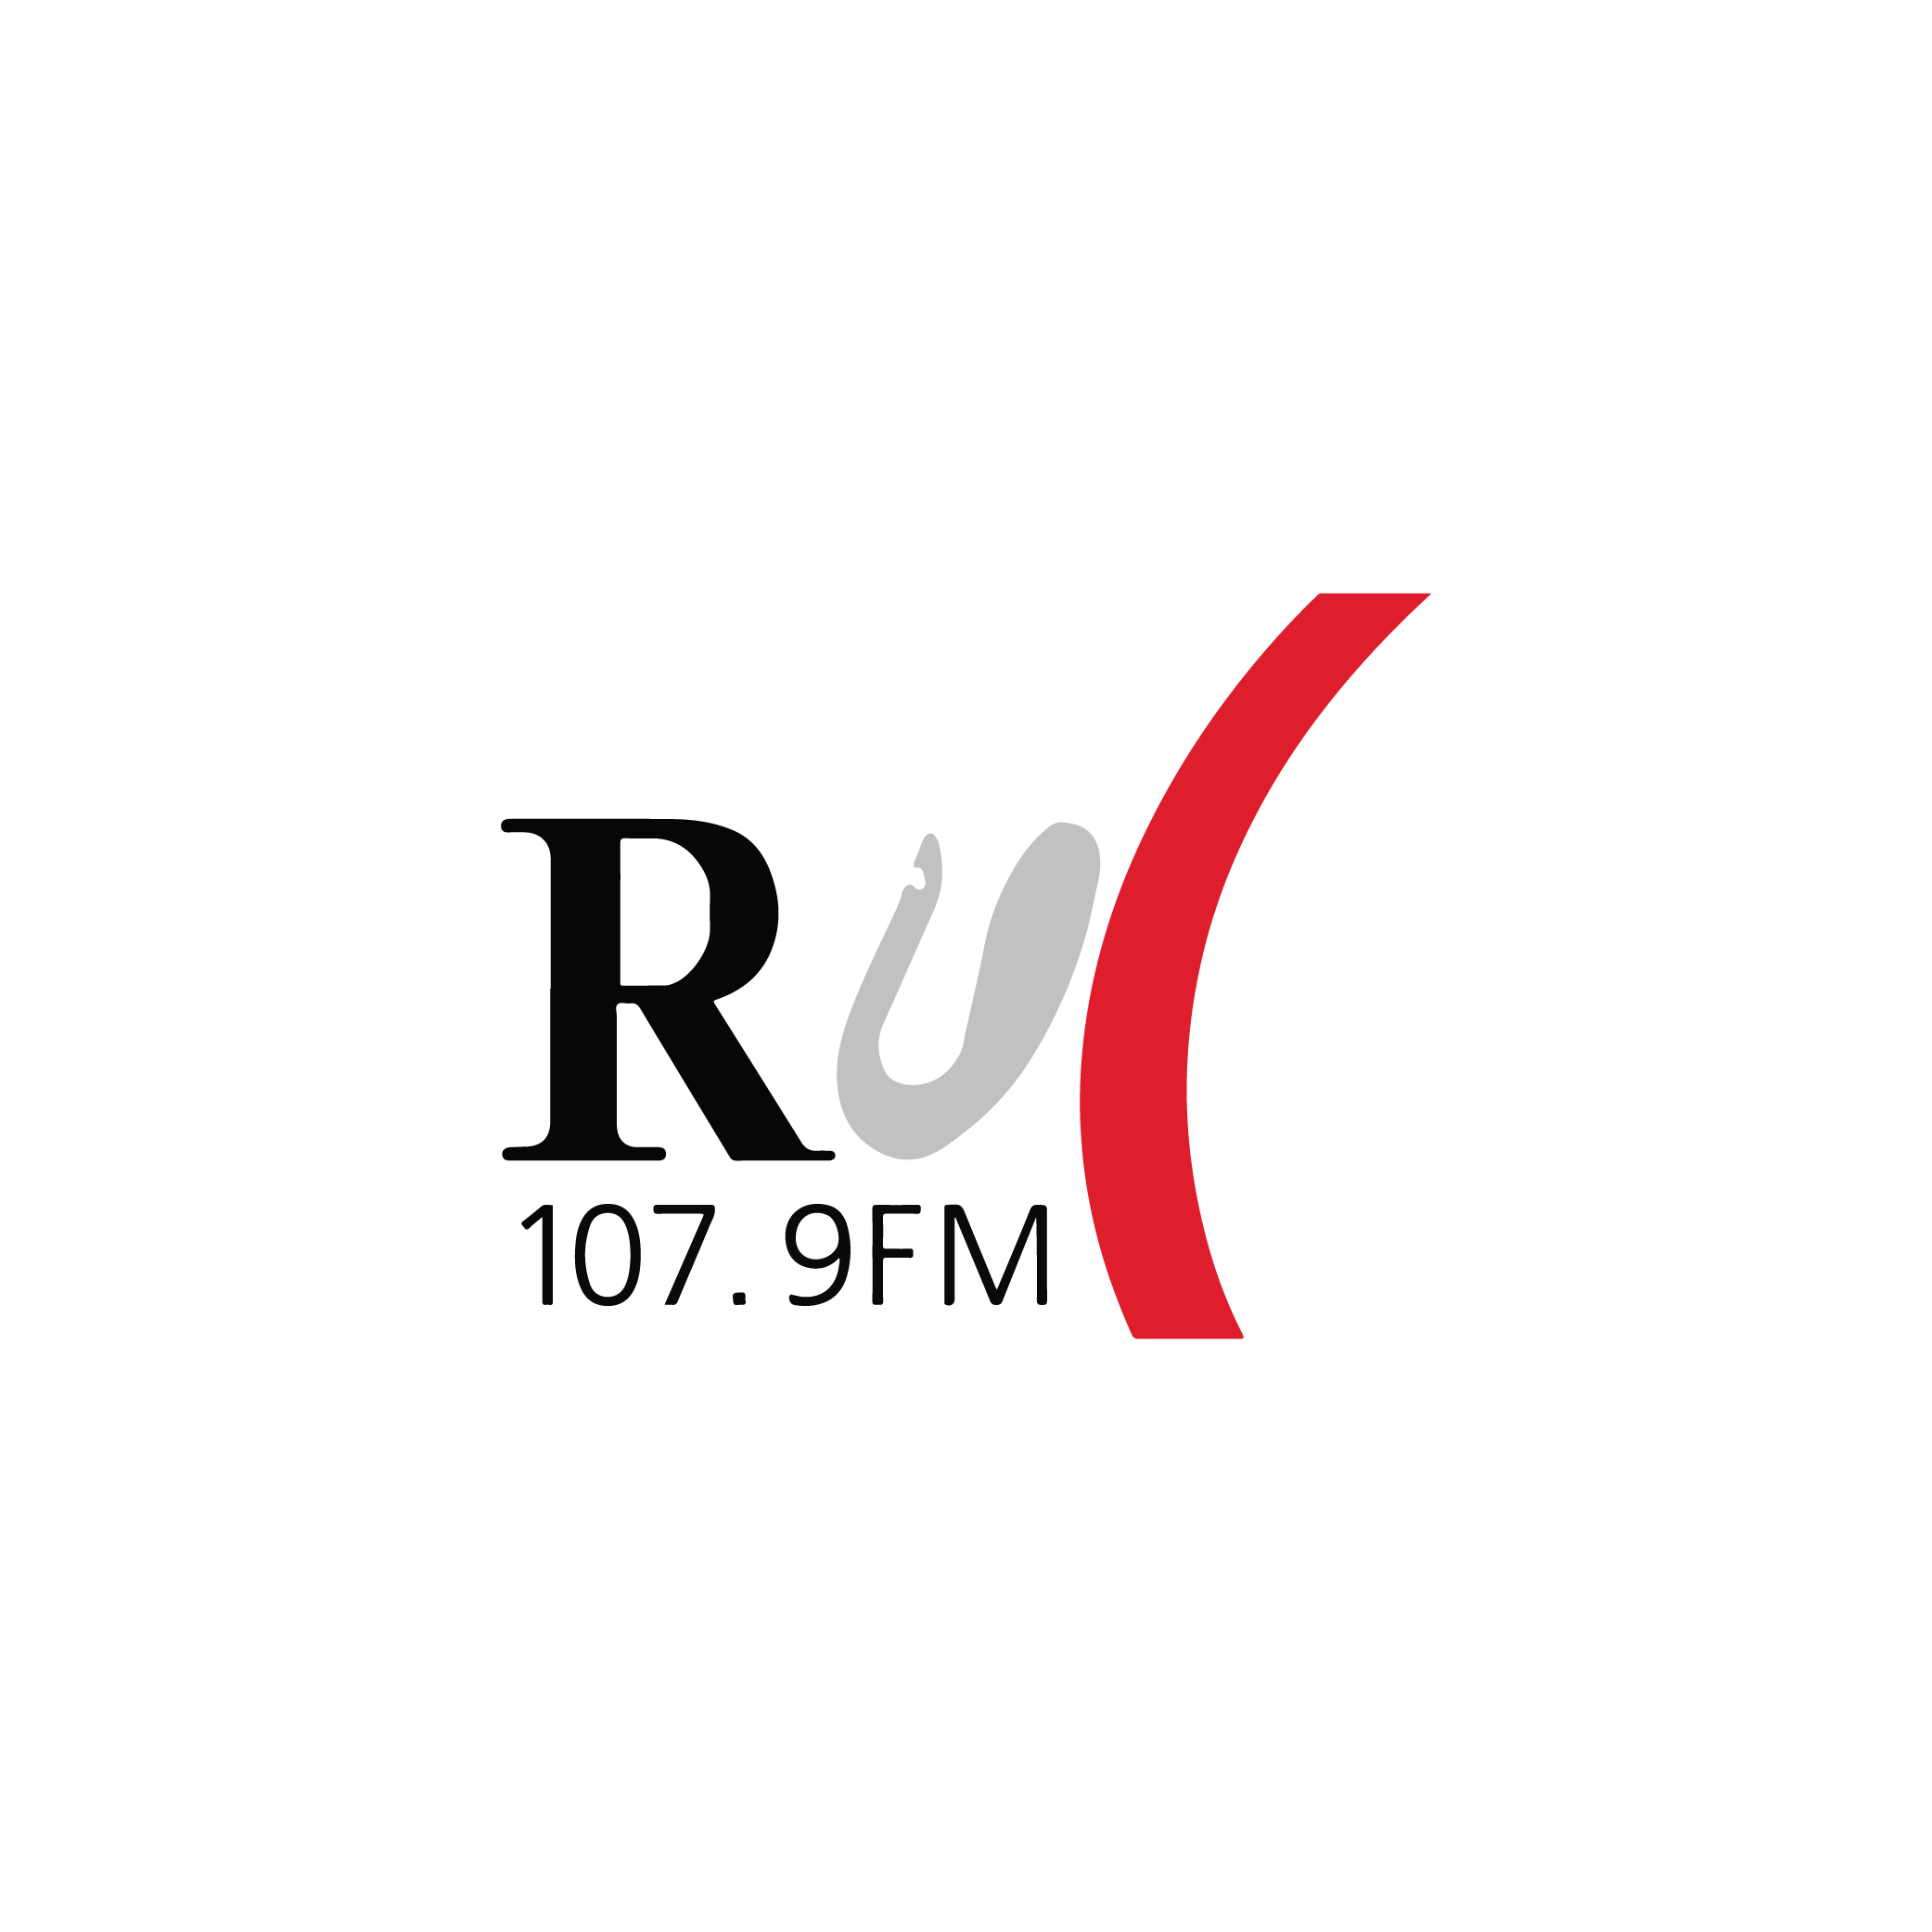 RUC - Rádio Universidade de Coimbra